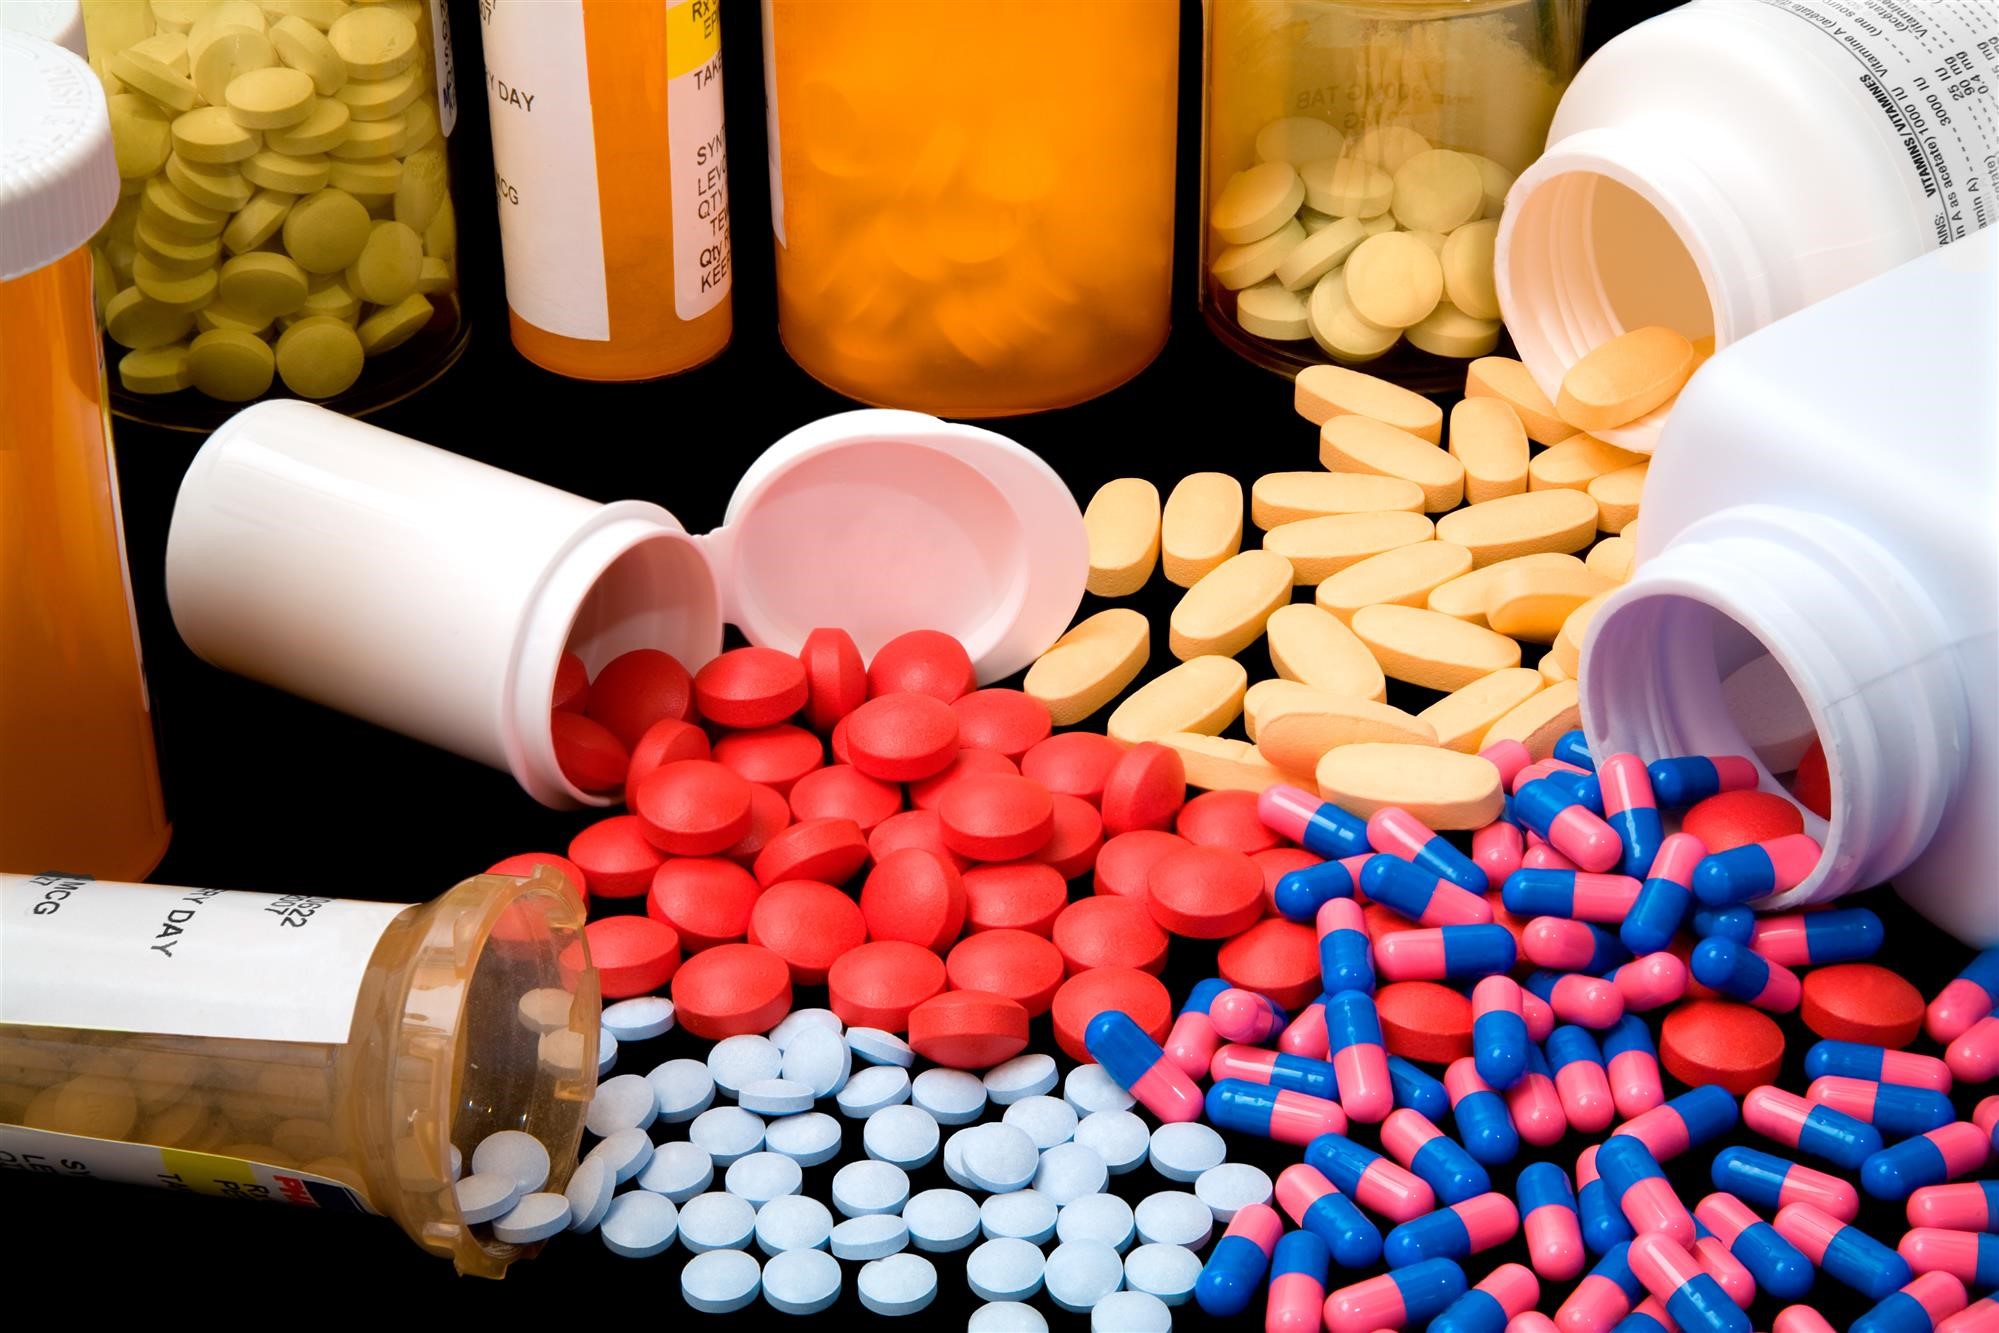 variety-of-pharma-drugs-spilled-on-table.jpg